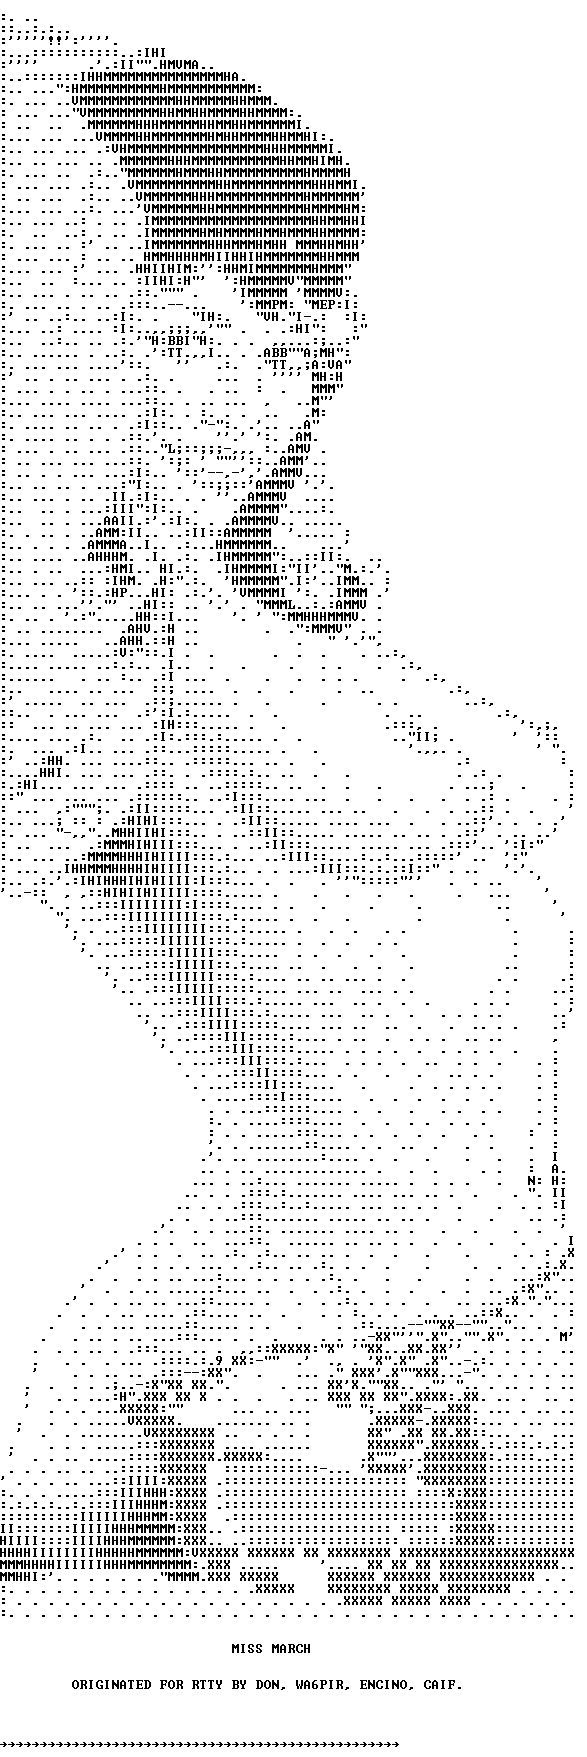 ASCII erotic images - 21